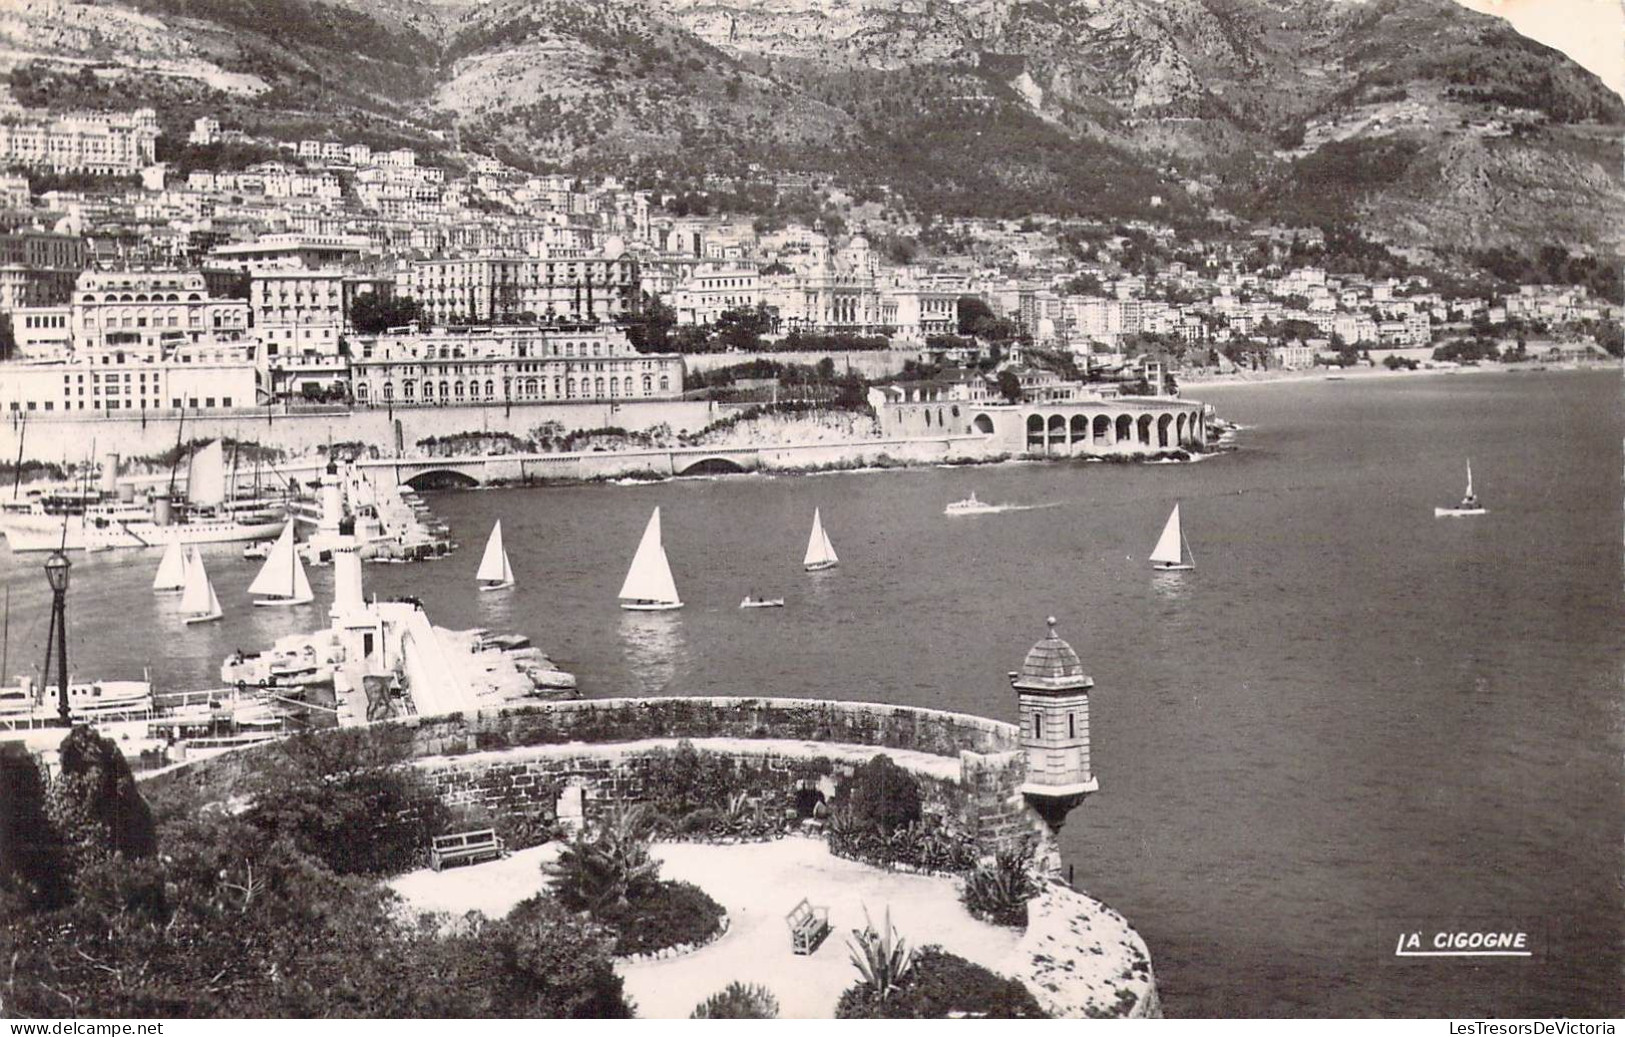 MONACO - Monte-Carlo - Les Régates - Vue Prise Du Fort Antoine - Carte Postale Ancienne - Monte-Carlo